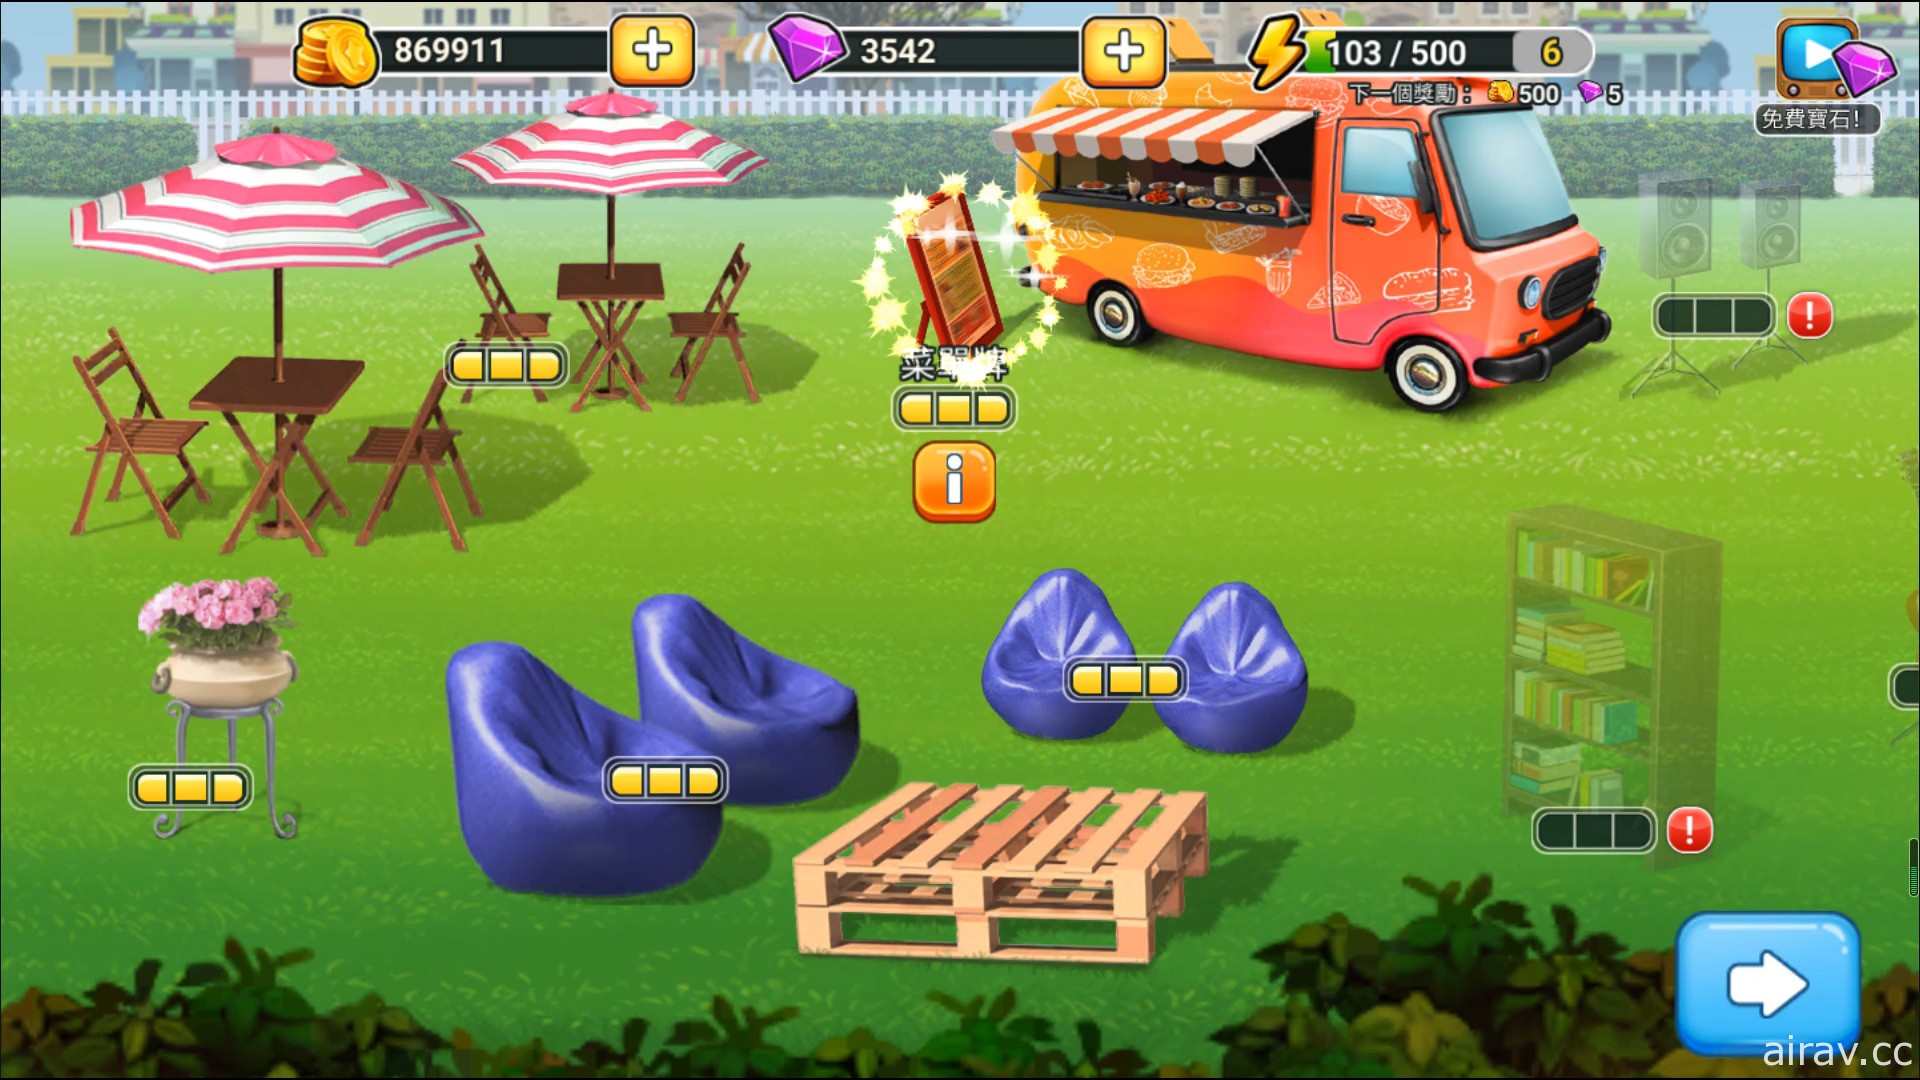 《餐車之旅：環球模擬餐廳烹飪遊戲》台港澳版 12 月底將開啟 Android 刪檔封測預約